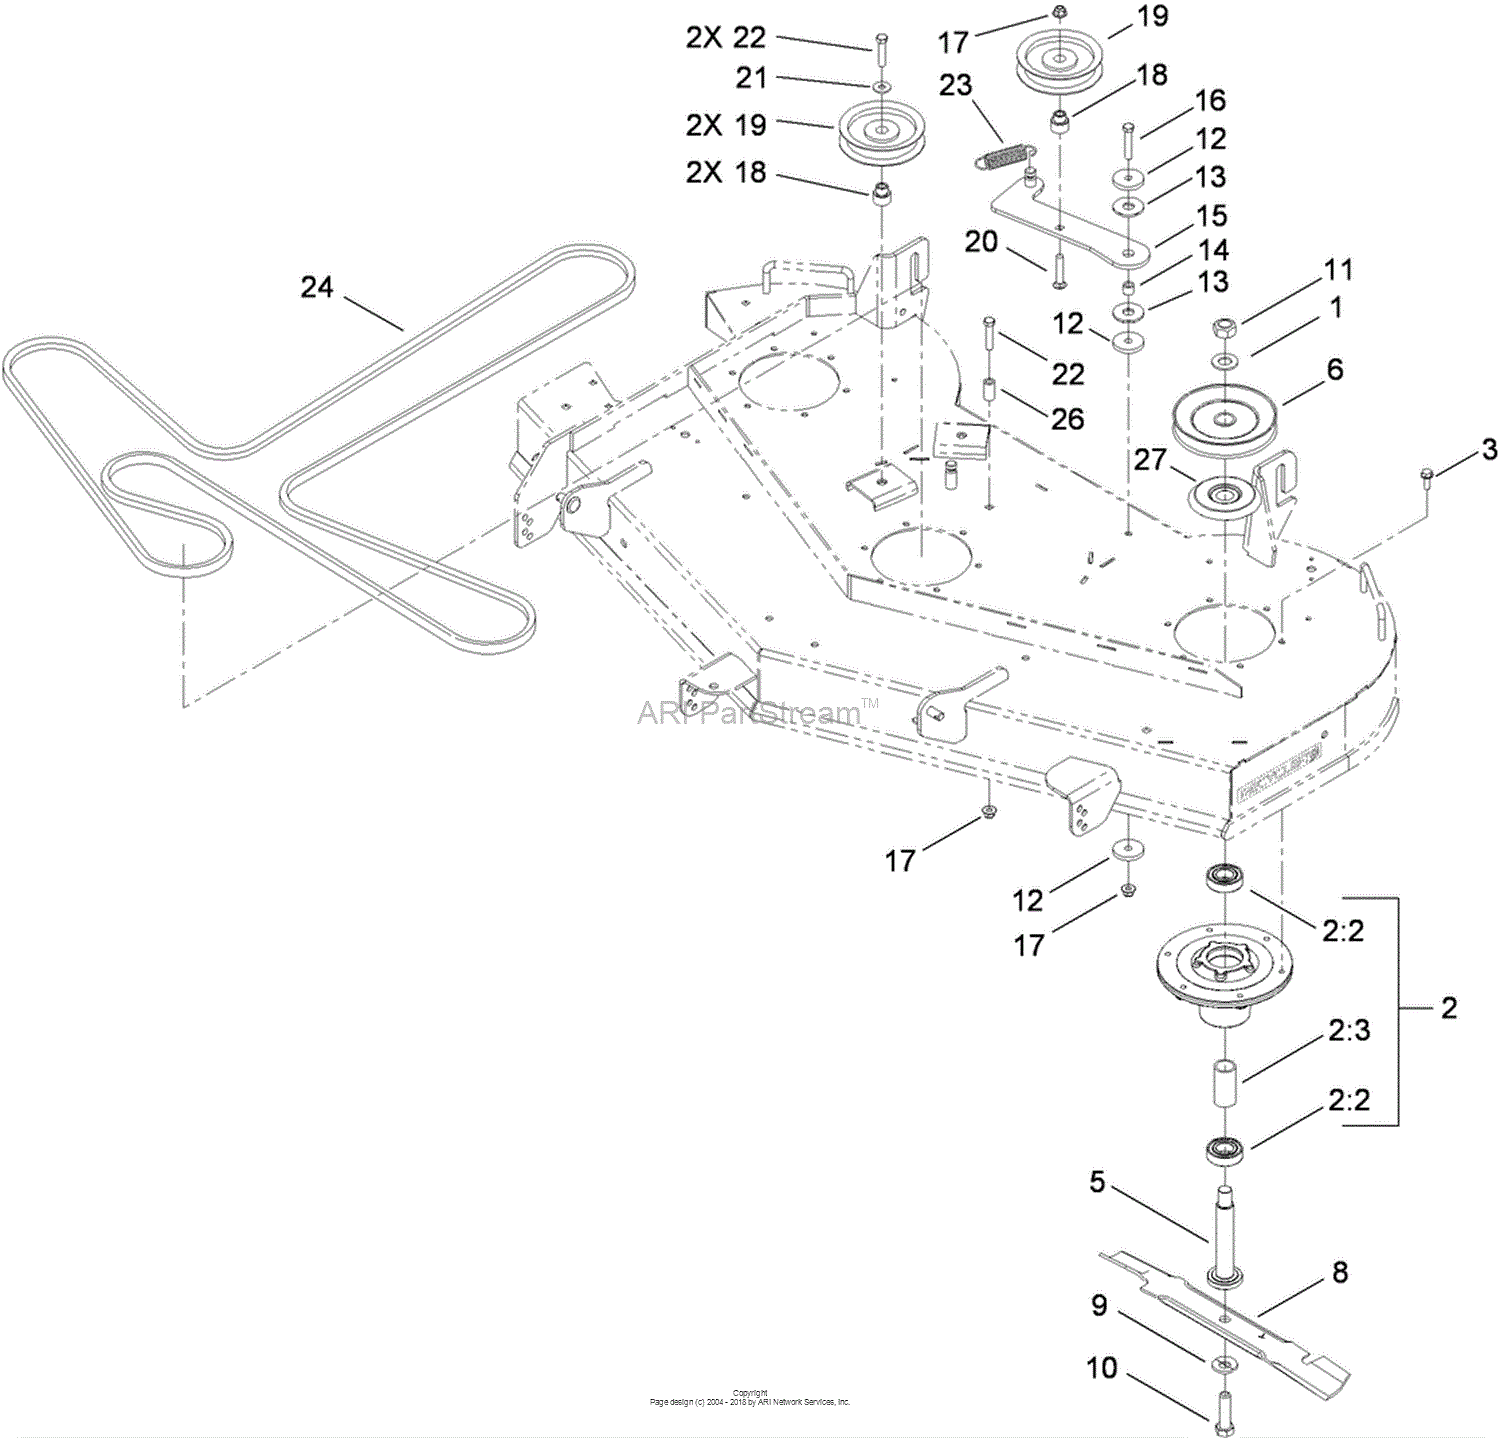 Toro 74832, TITAN ZX5450 Zero-Turn-Radius Riding Mower, 2010 (SN 